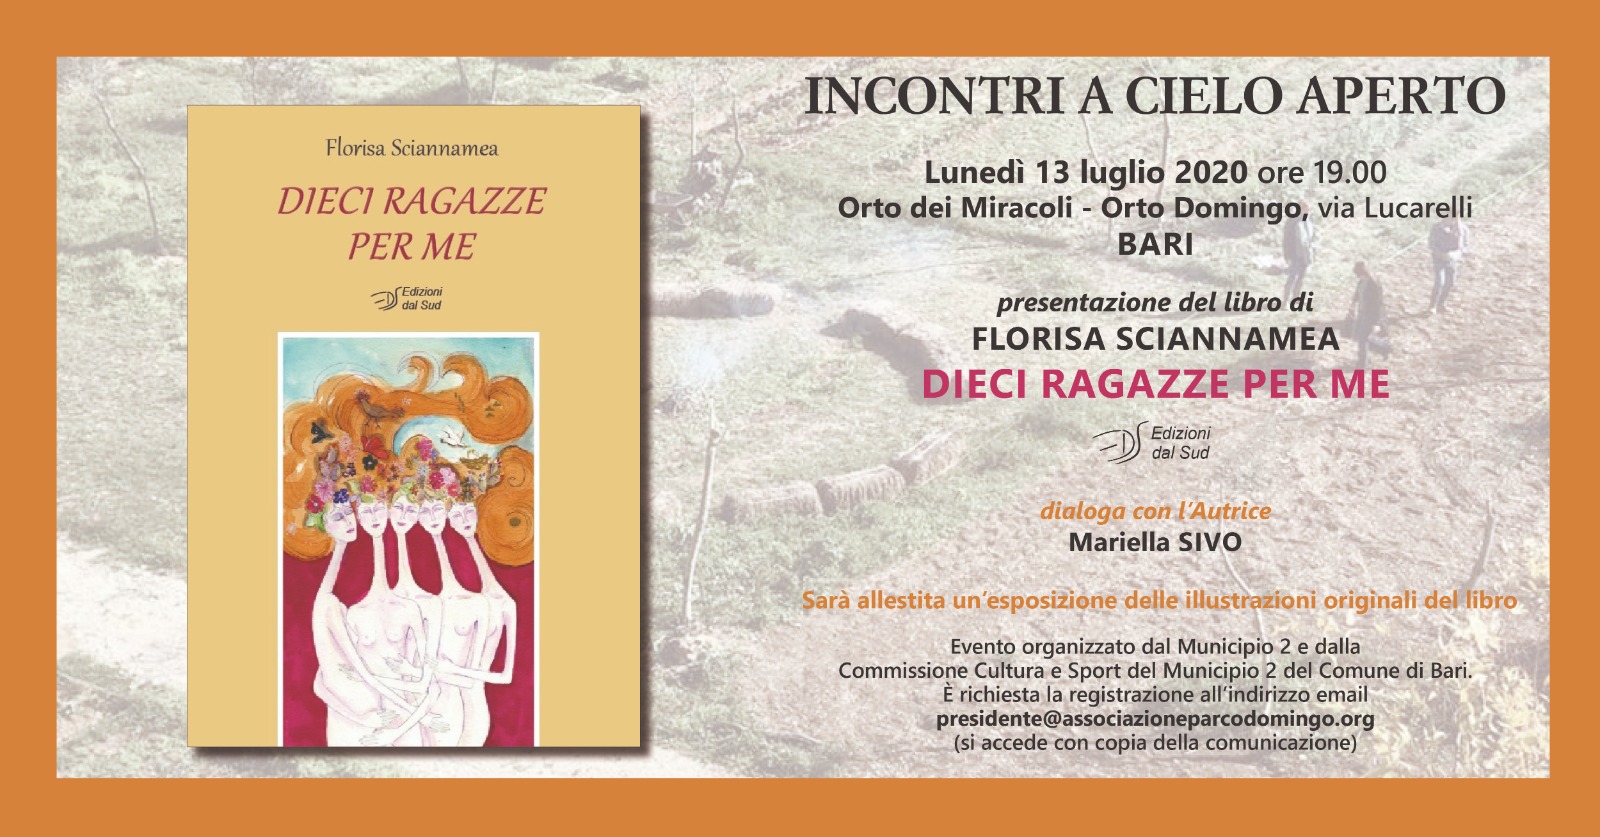 Presentazione del libro "Dieci ragazze per me" di Florisa Sciannamea - 13 luglio 2020 - Orto Domingo - Orto dei Miracoli Bari - ore 19.00